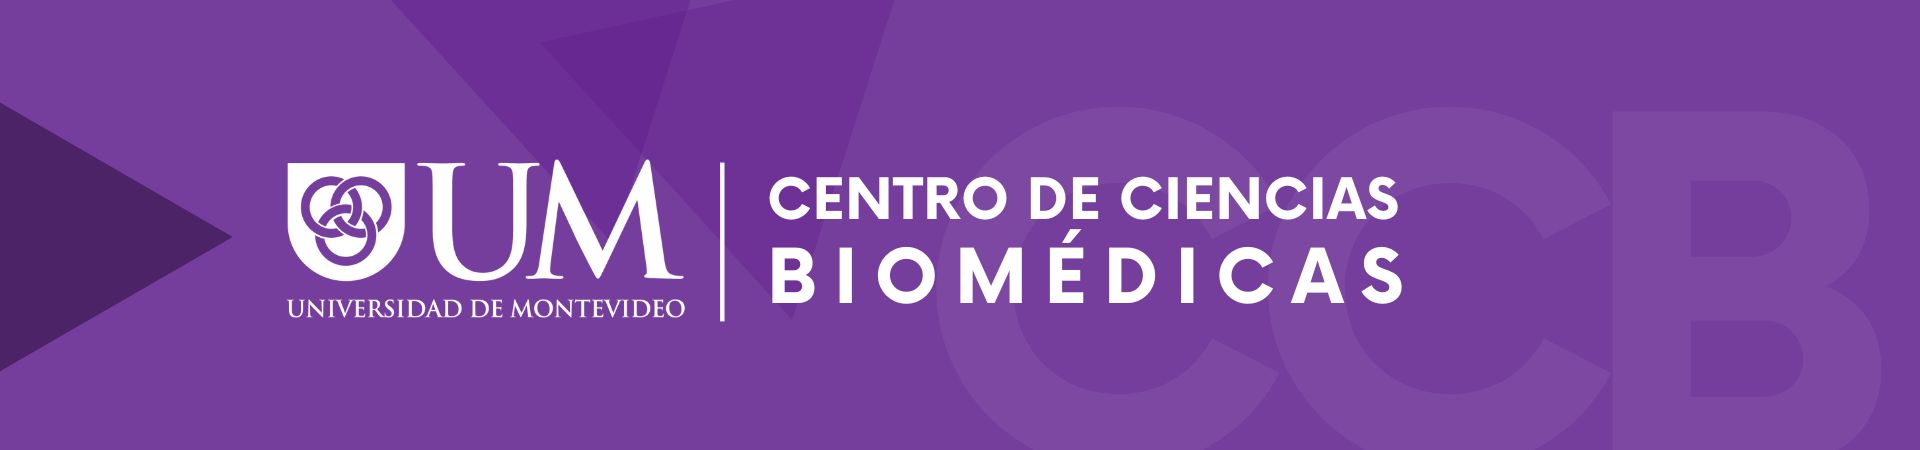 Encabezado formulario de inscripción CCB Ciencias Biomédicas de la Universidad de Montevideo